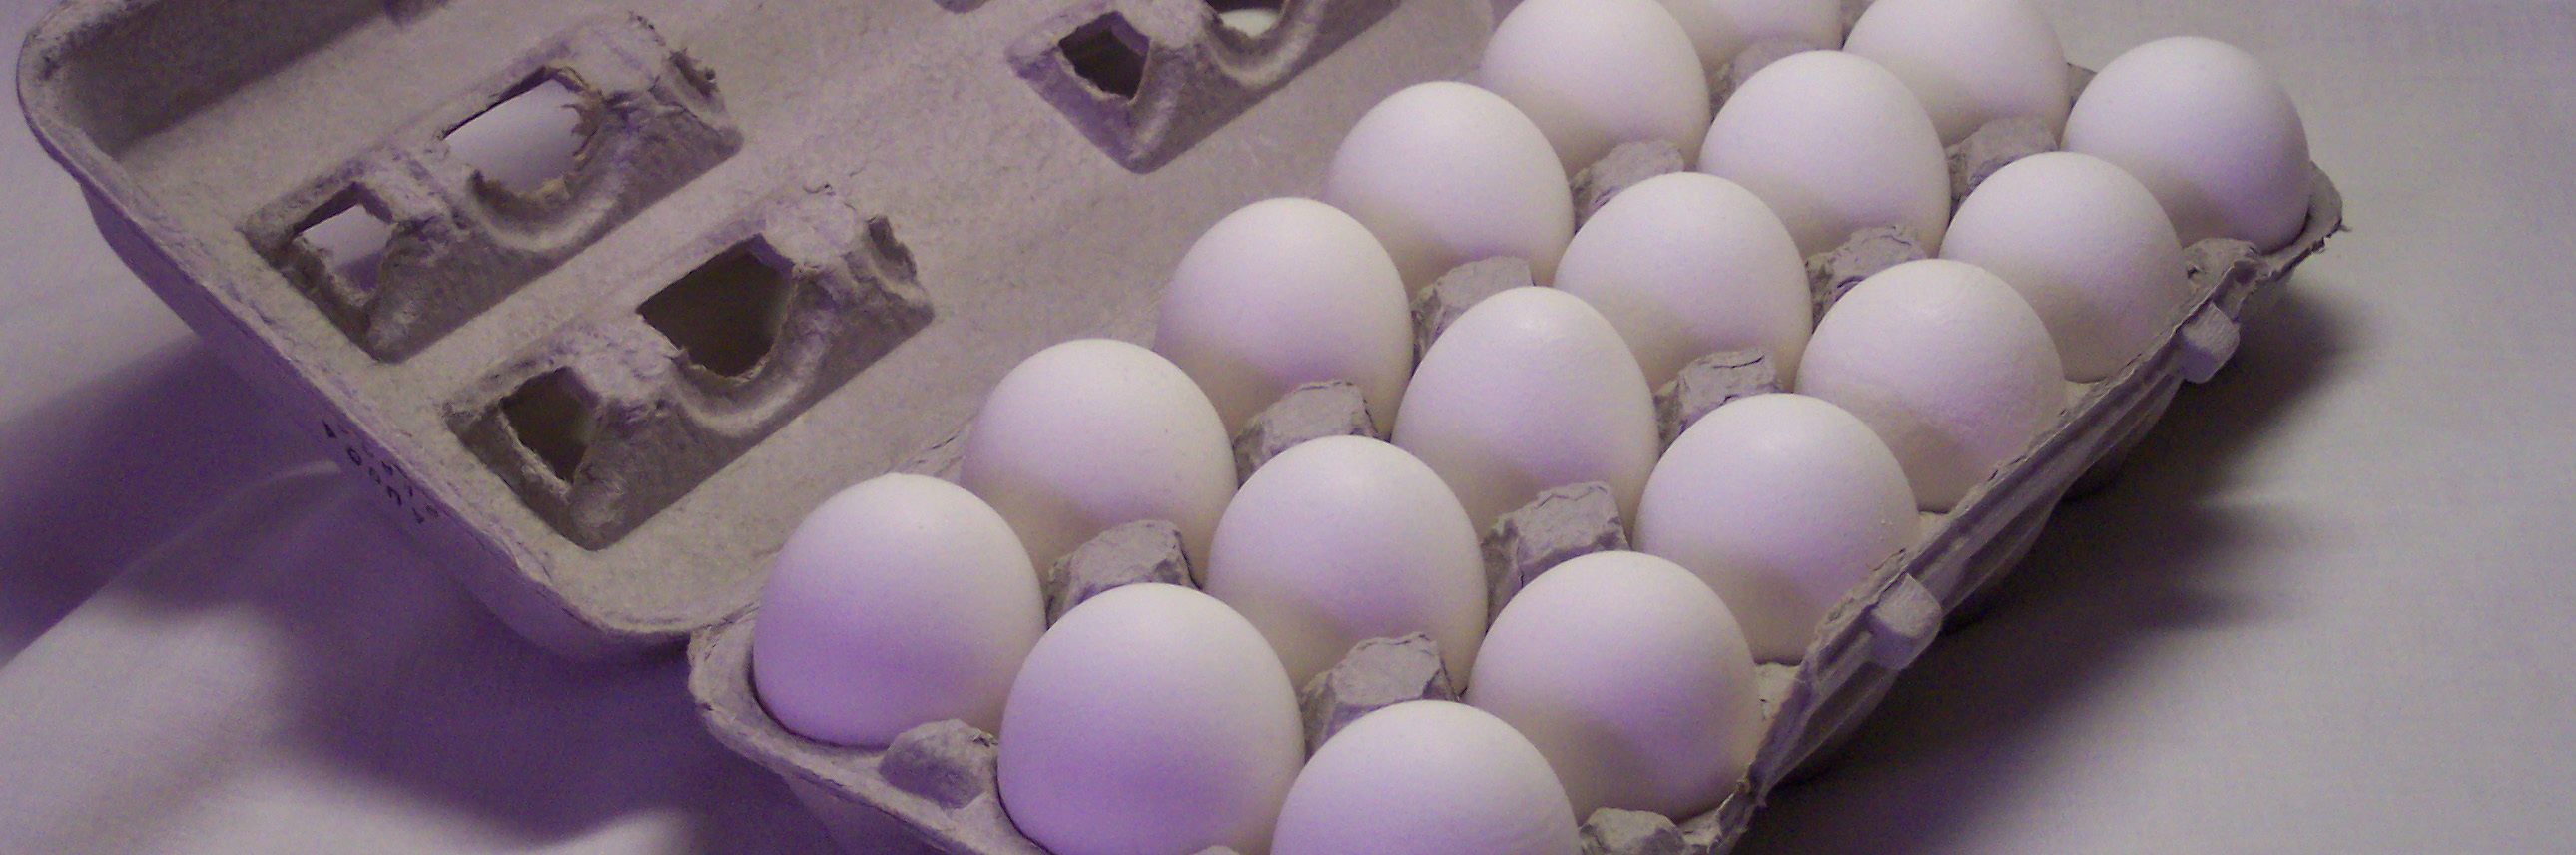 وعده یارانه ۵۰ میلیارد تومانی تنظیم بازار تخم مرغ عملی نشد